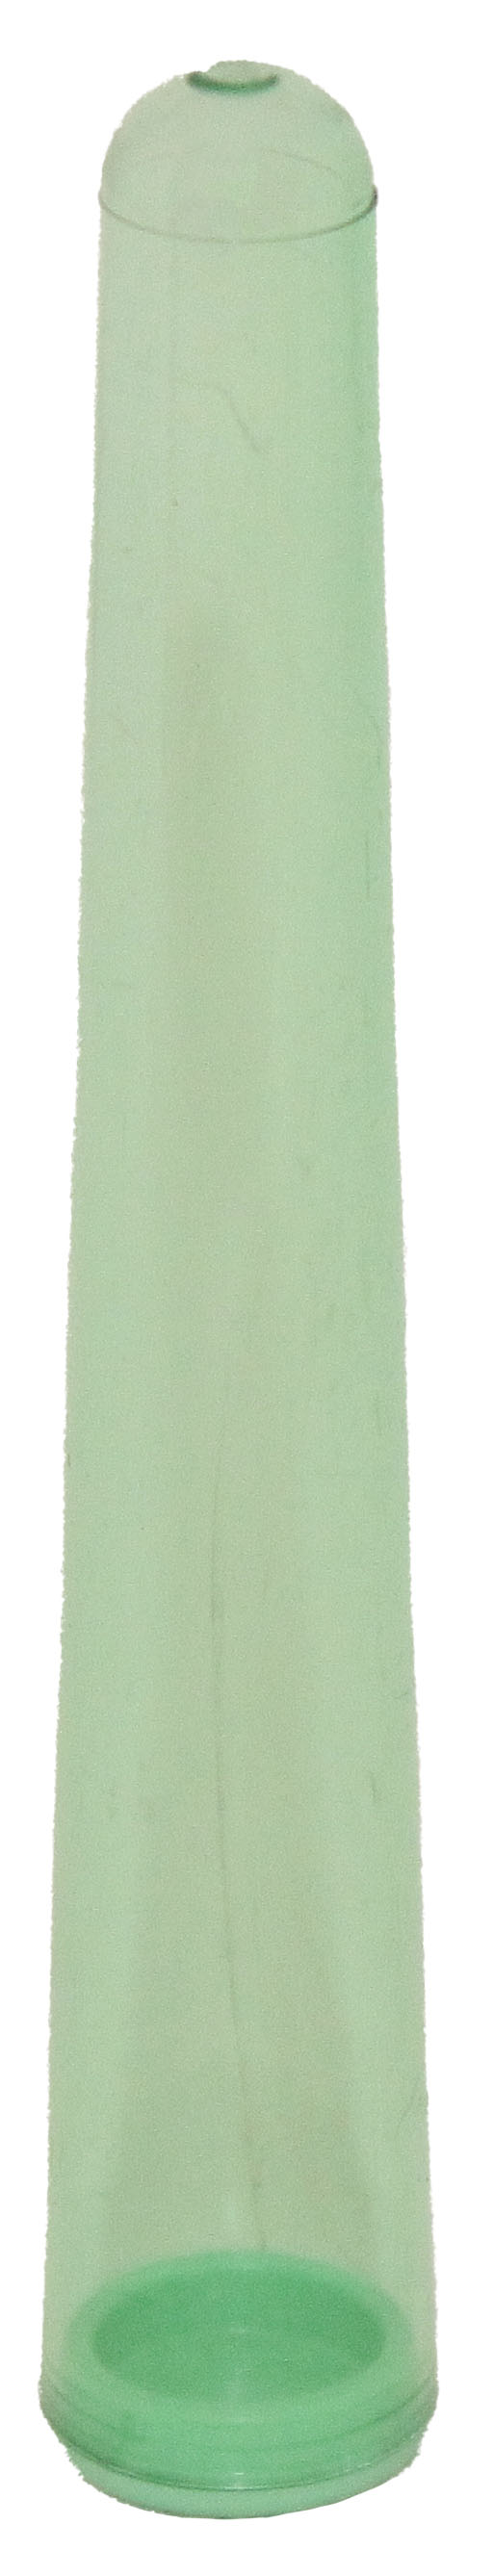 Porta-J-Eco-110-Mm-Verde-Trasparente